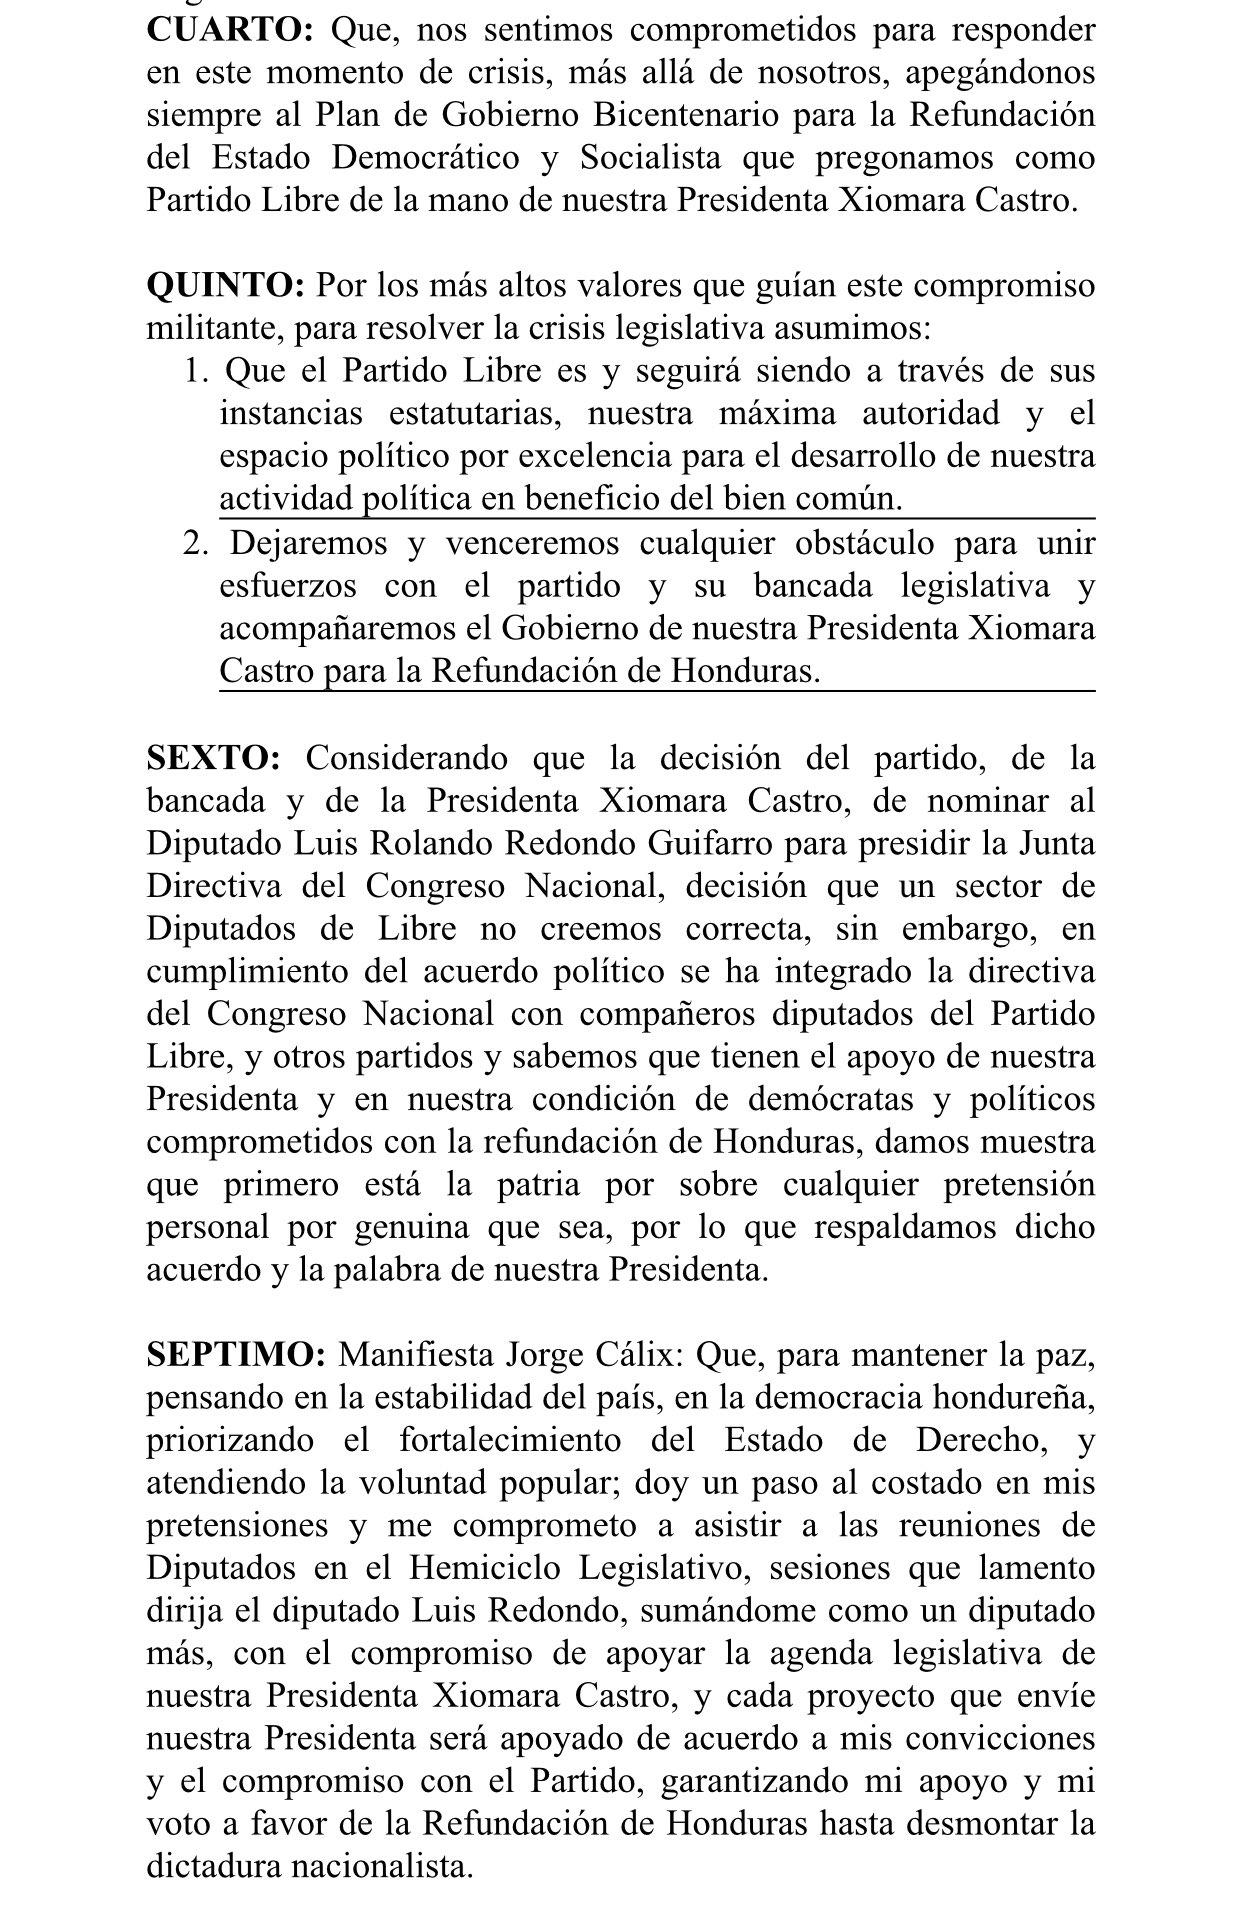 Jorge Cálix da un paso al costado y firma acuerdo para que Luis Redondo continúe como único presidente del Congreso Nacional